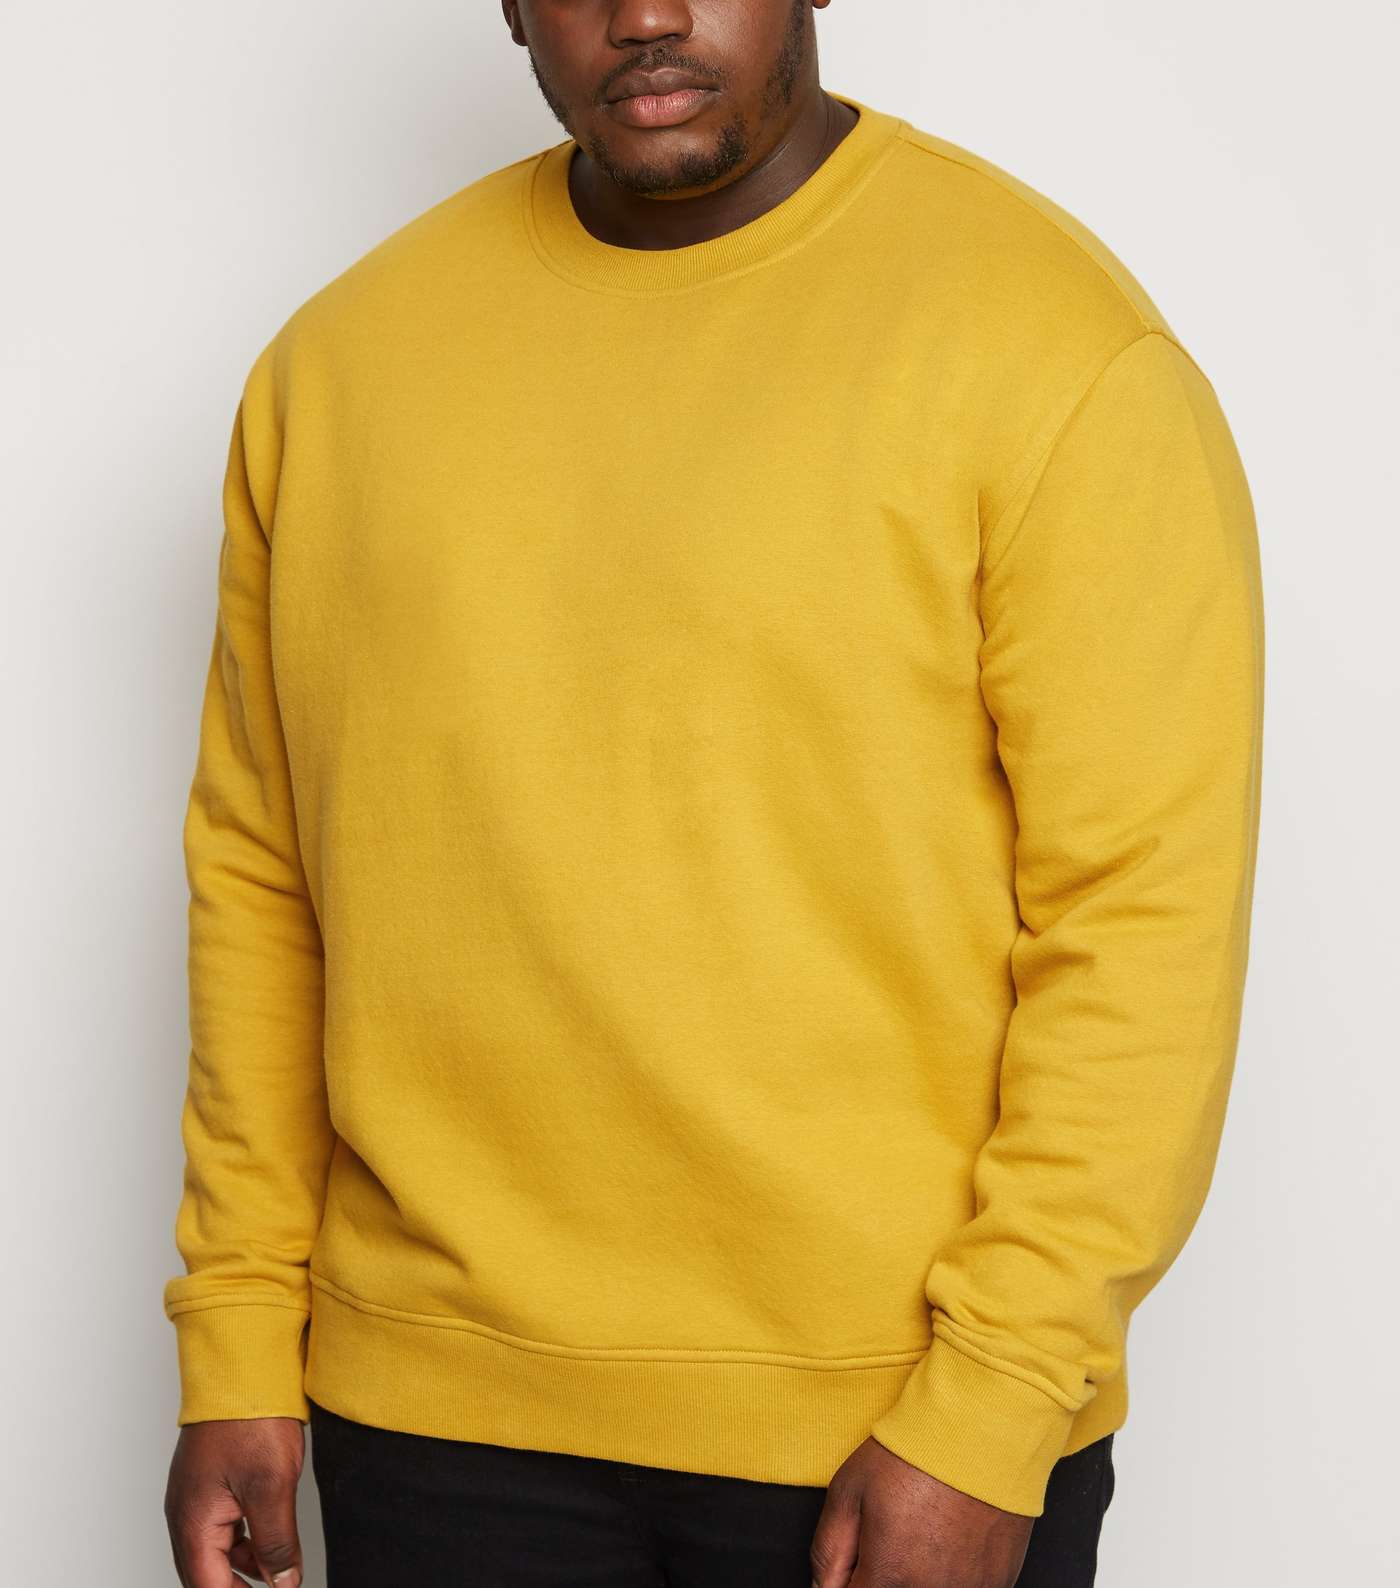 Plus Size Yellow Long Sleeve Crew Sweatshirt